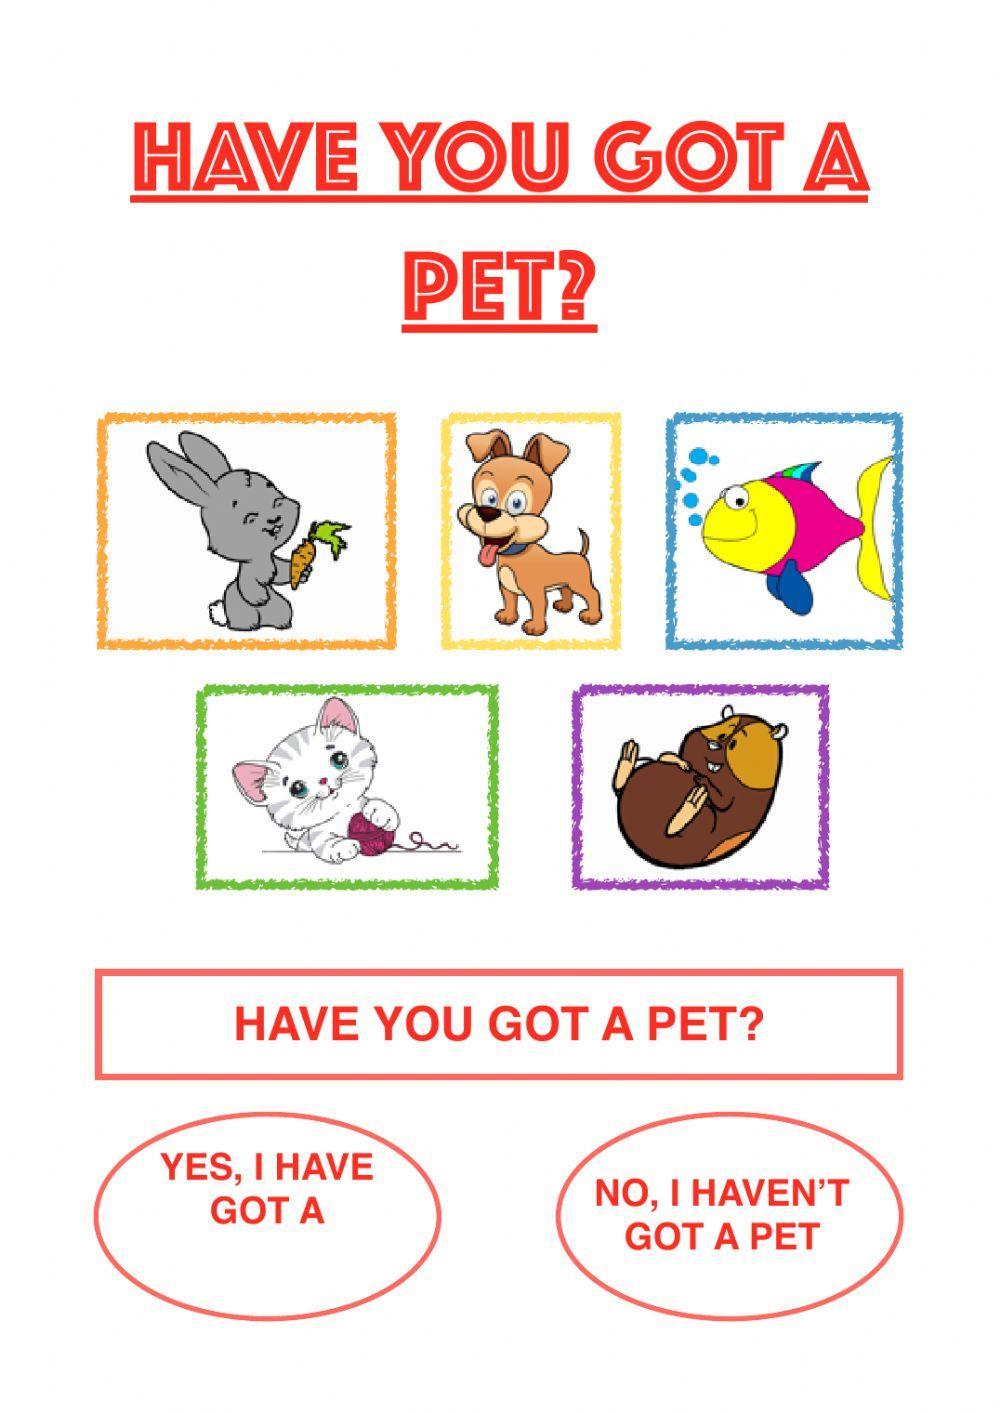 Have you got a pet?